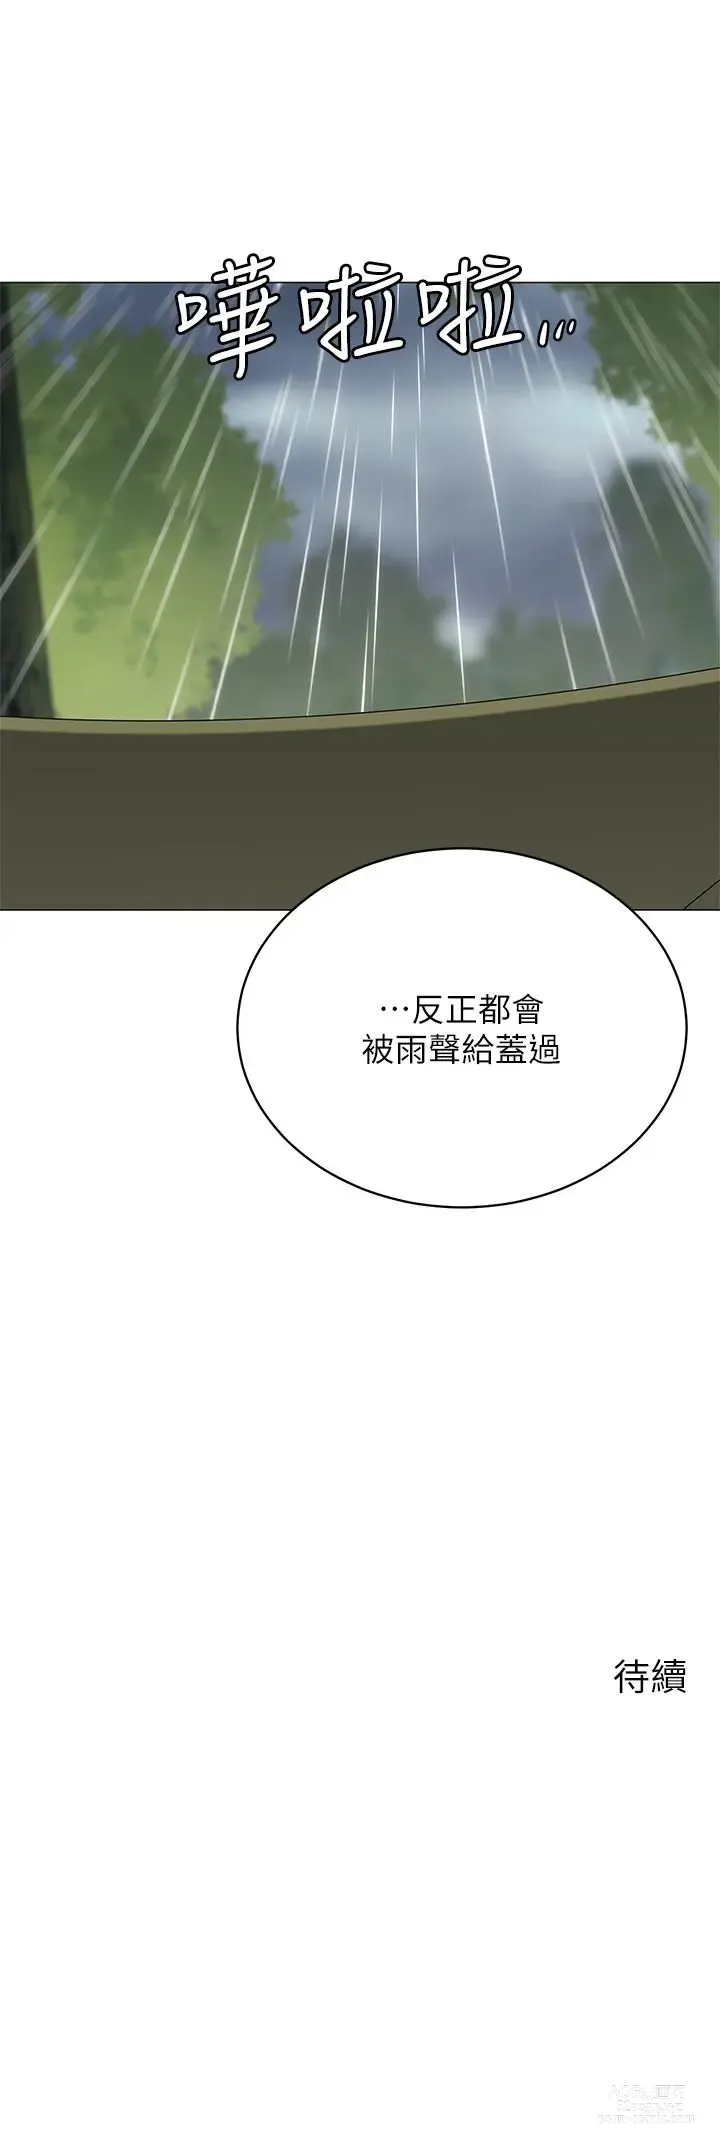 Page 1675 of manga 帳篷裡的秘密 1-30话 中文无水印